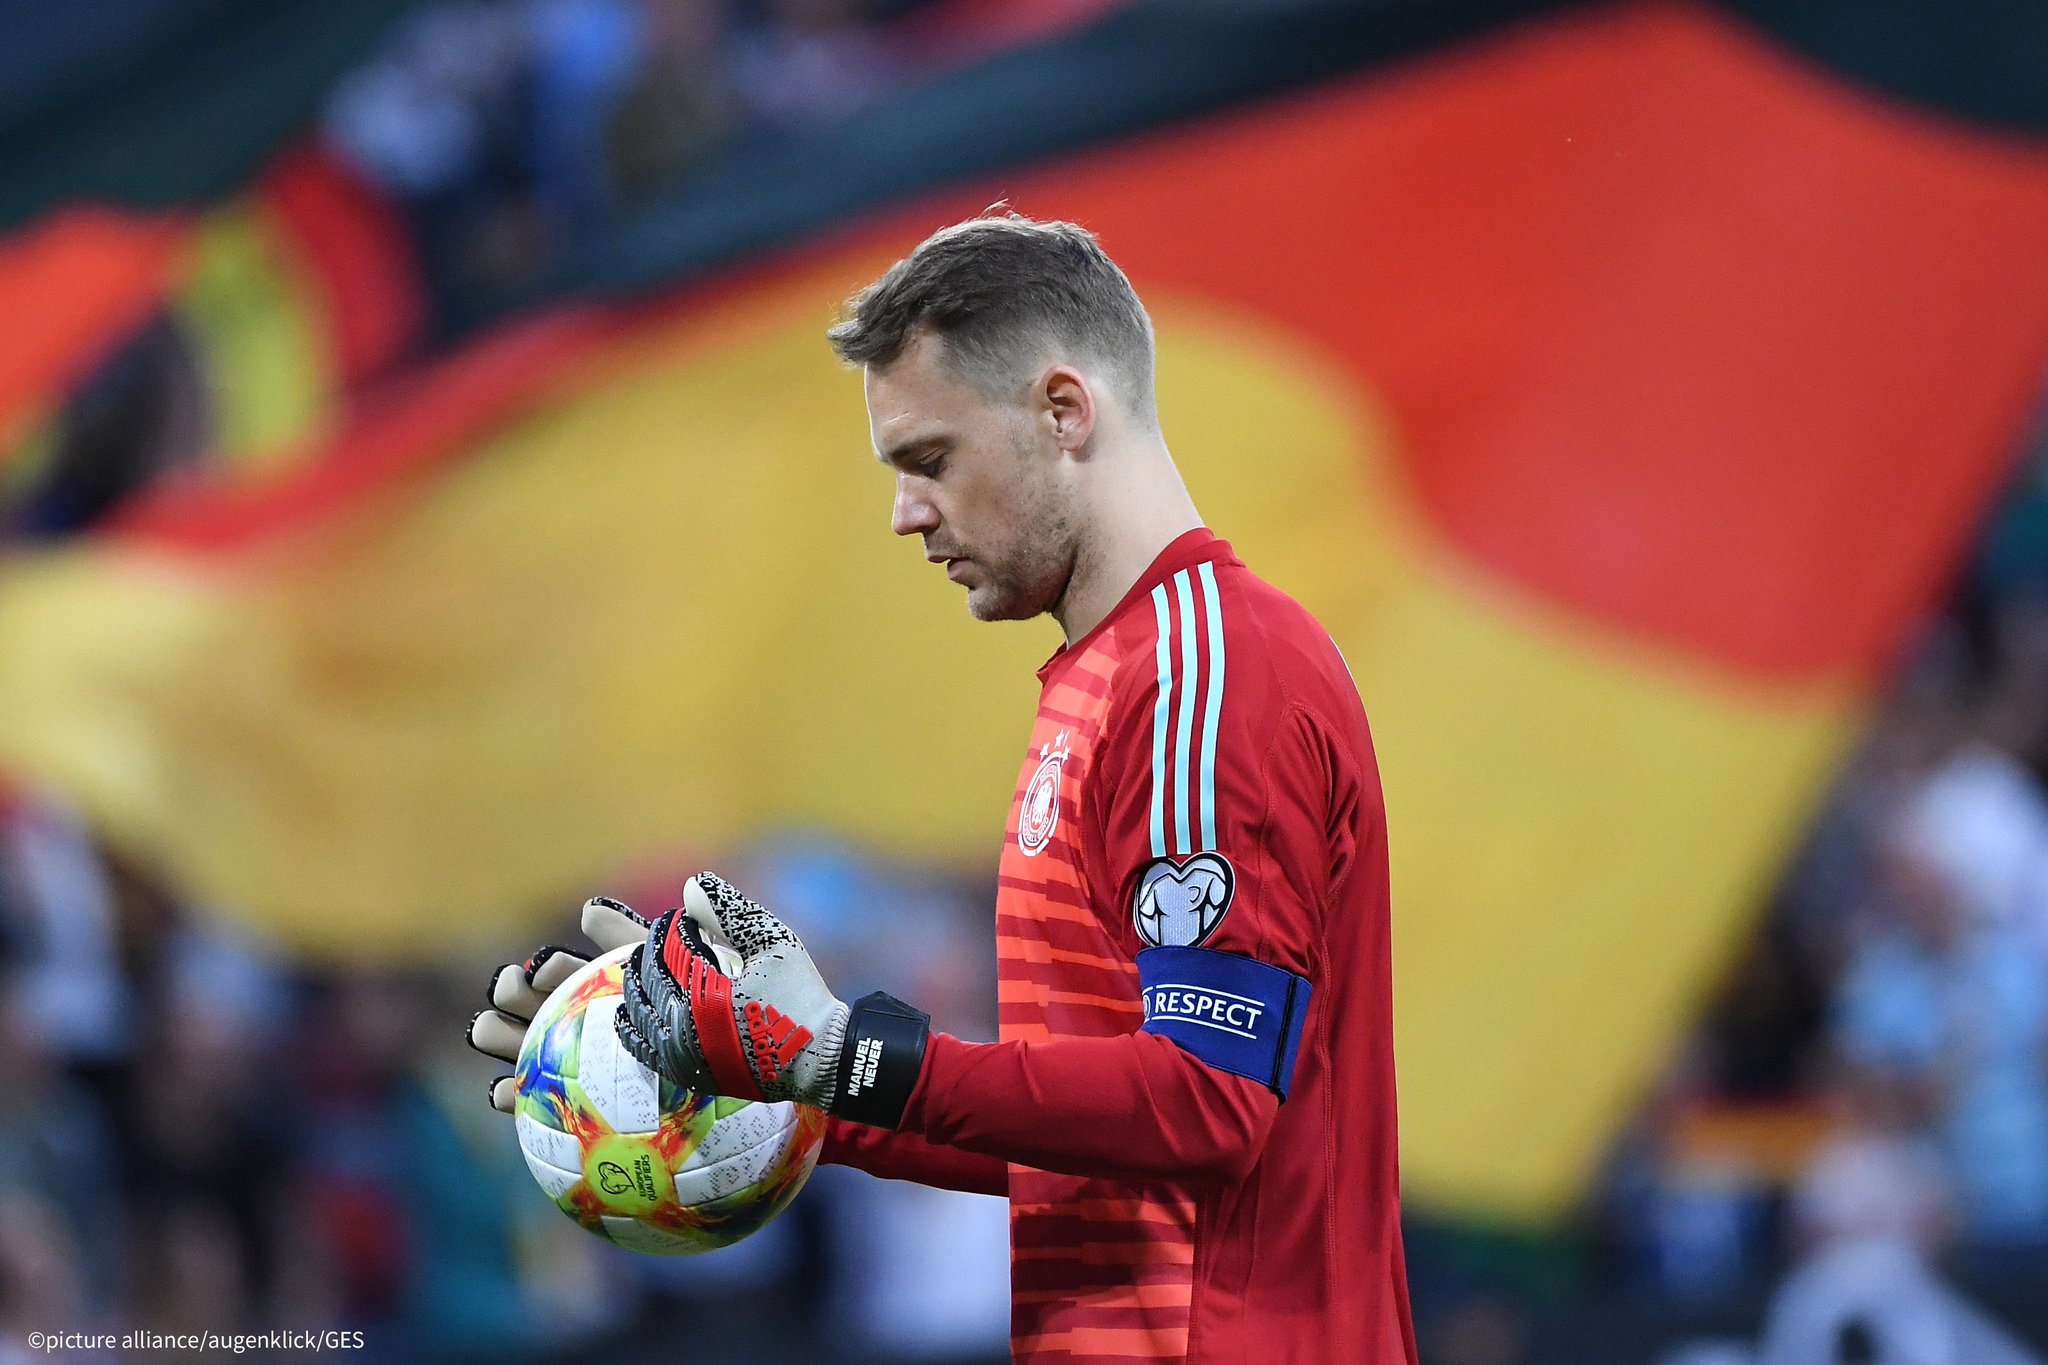 ドイツ大使館 Uefa Euroの予選でドイツ代表がエストニアと対戦し 8 0で快勝しました 絶対的守護神 ゴールキーパーのノイアー選手 身長193cm はこれで代表試合目にして37回目のクリーンシート 無失点の完封勝利で これまで40年破られ